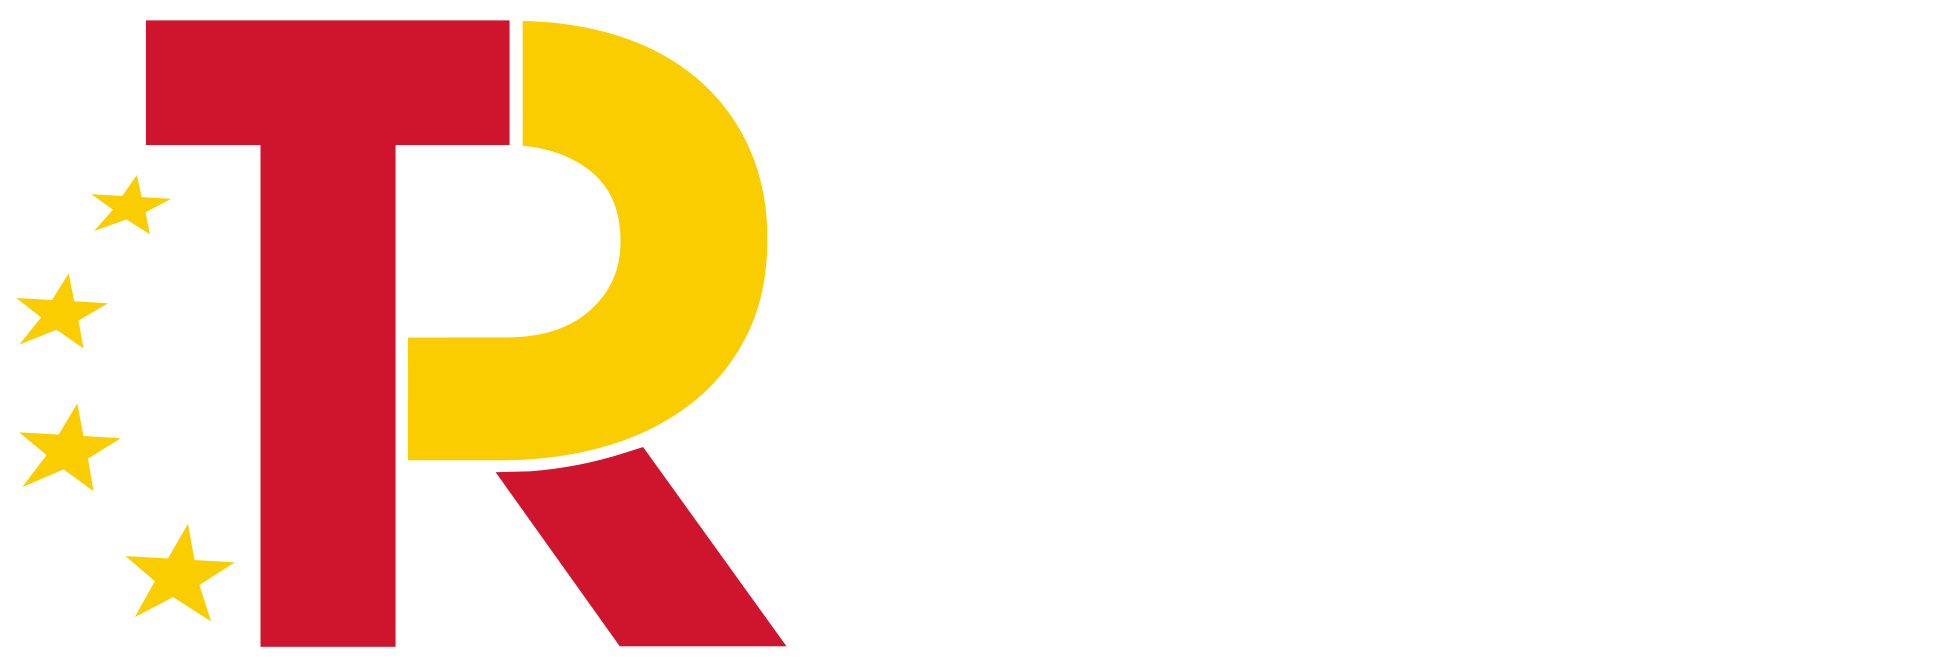 Mariscos Huelva Mar Plan de Recuperación, Transformación y Resistencia